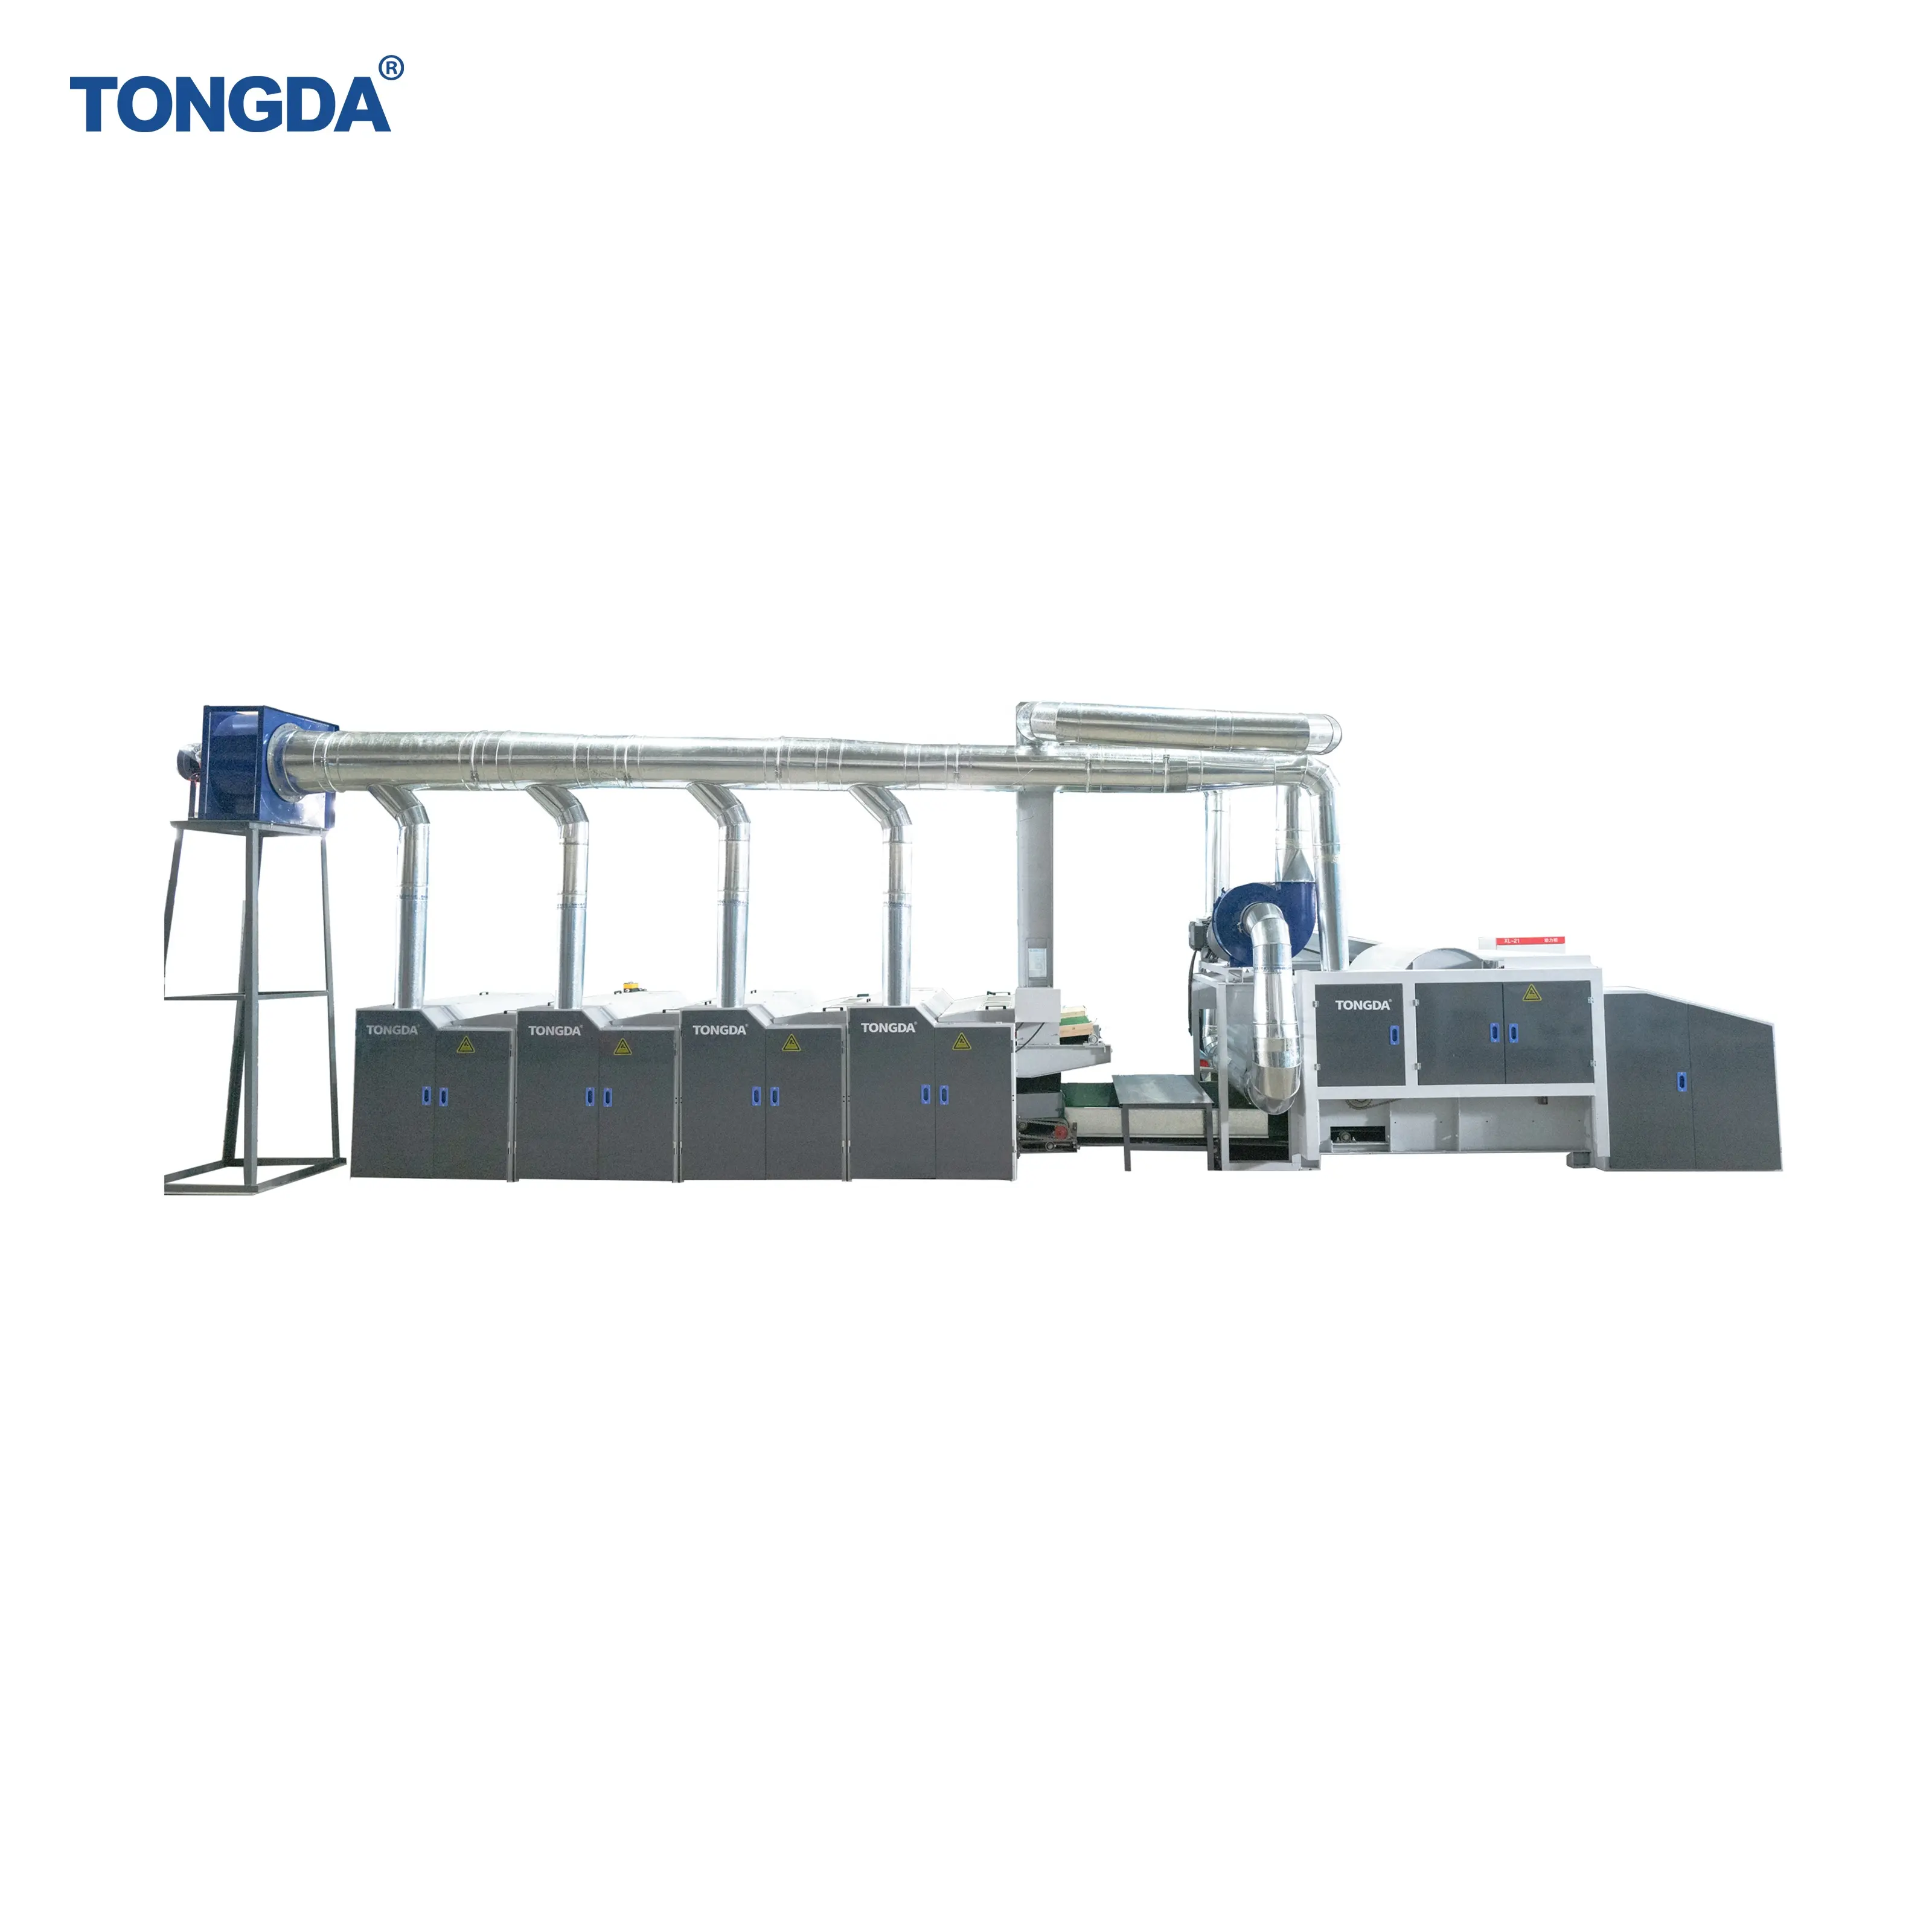 경질 및 연질 폐기물 재활용 방적기를 위한 TONGDA TD-1300 생산라인